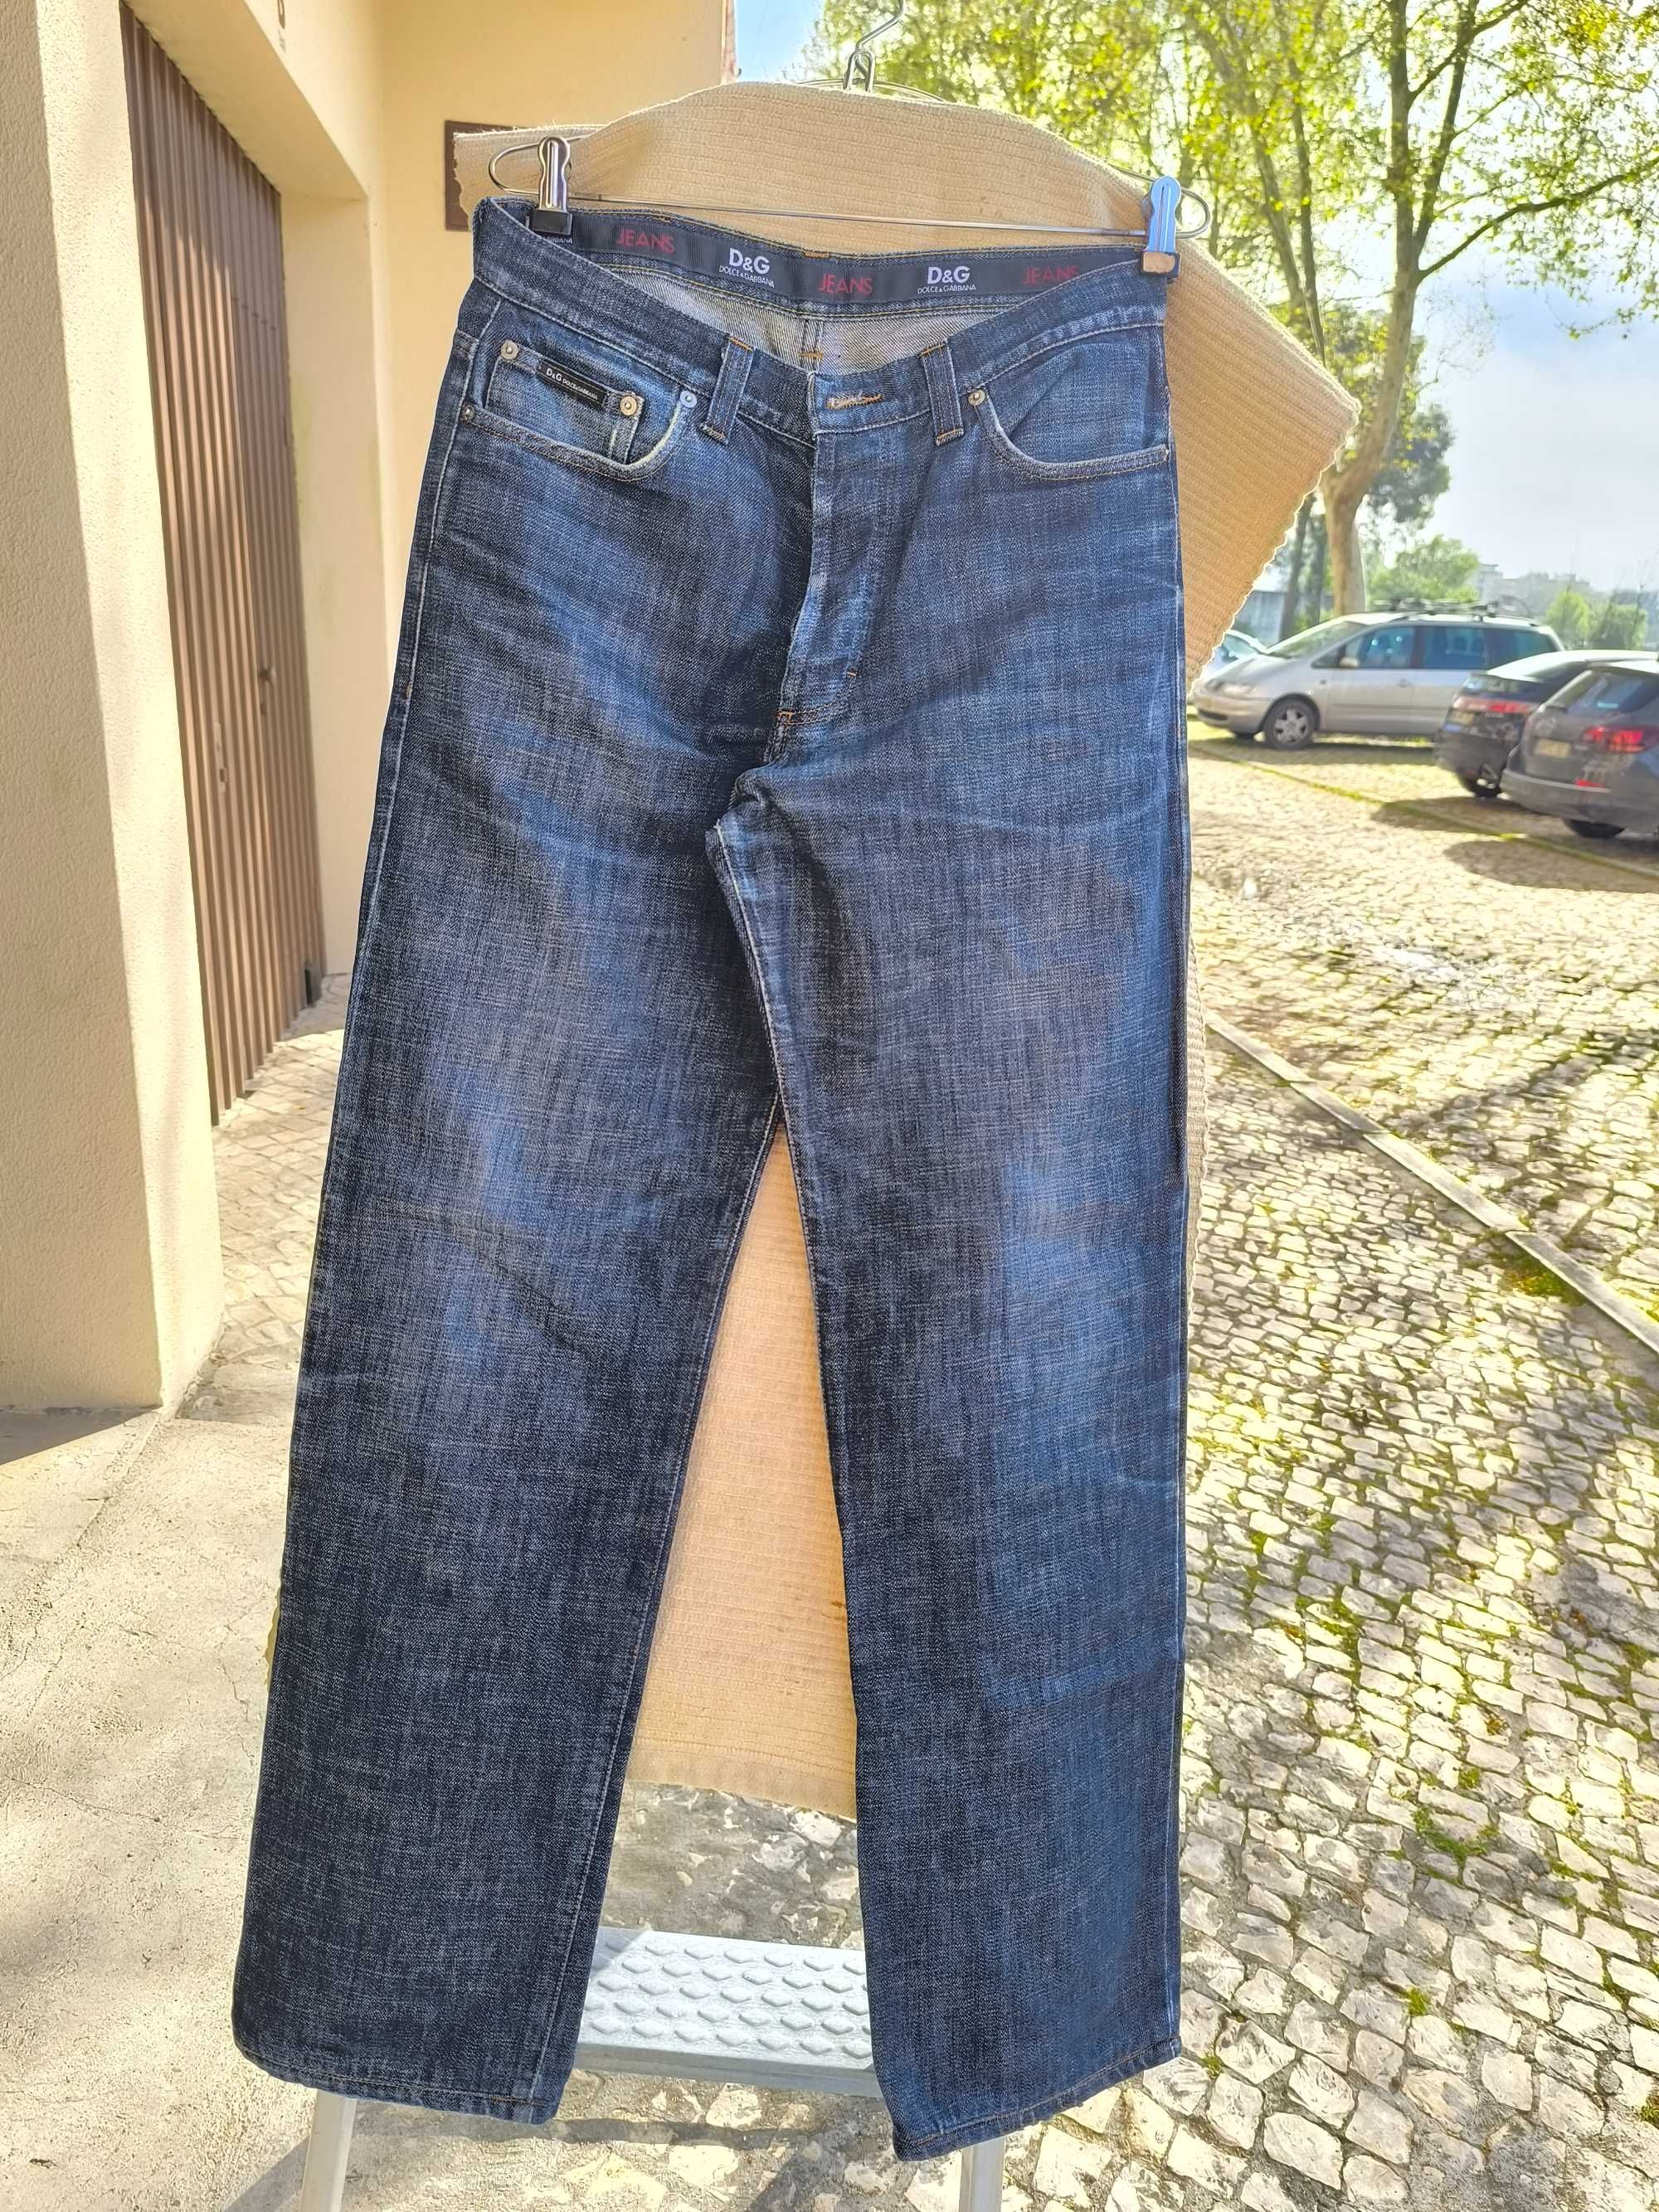 Jeans 34, D&G. Em excelente estado.
Vintage